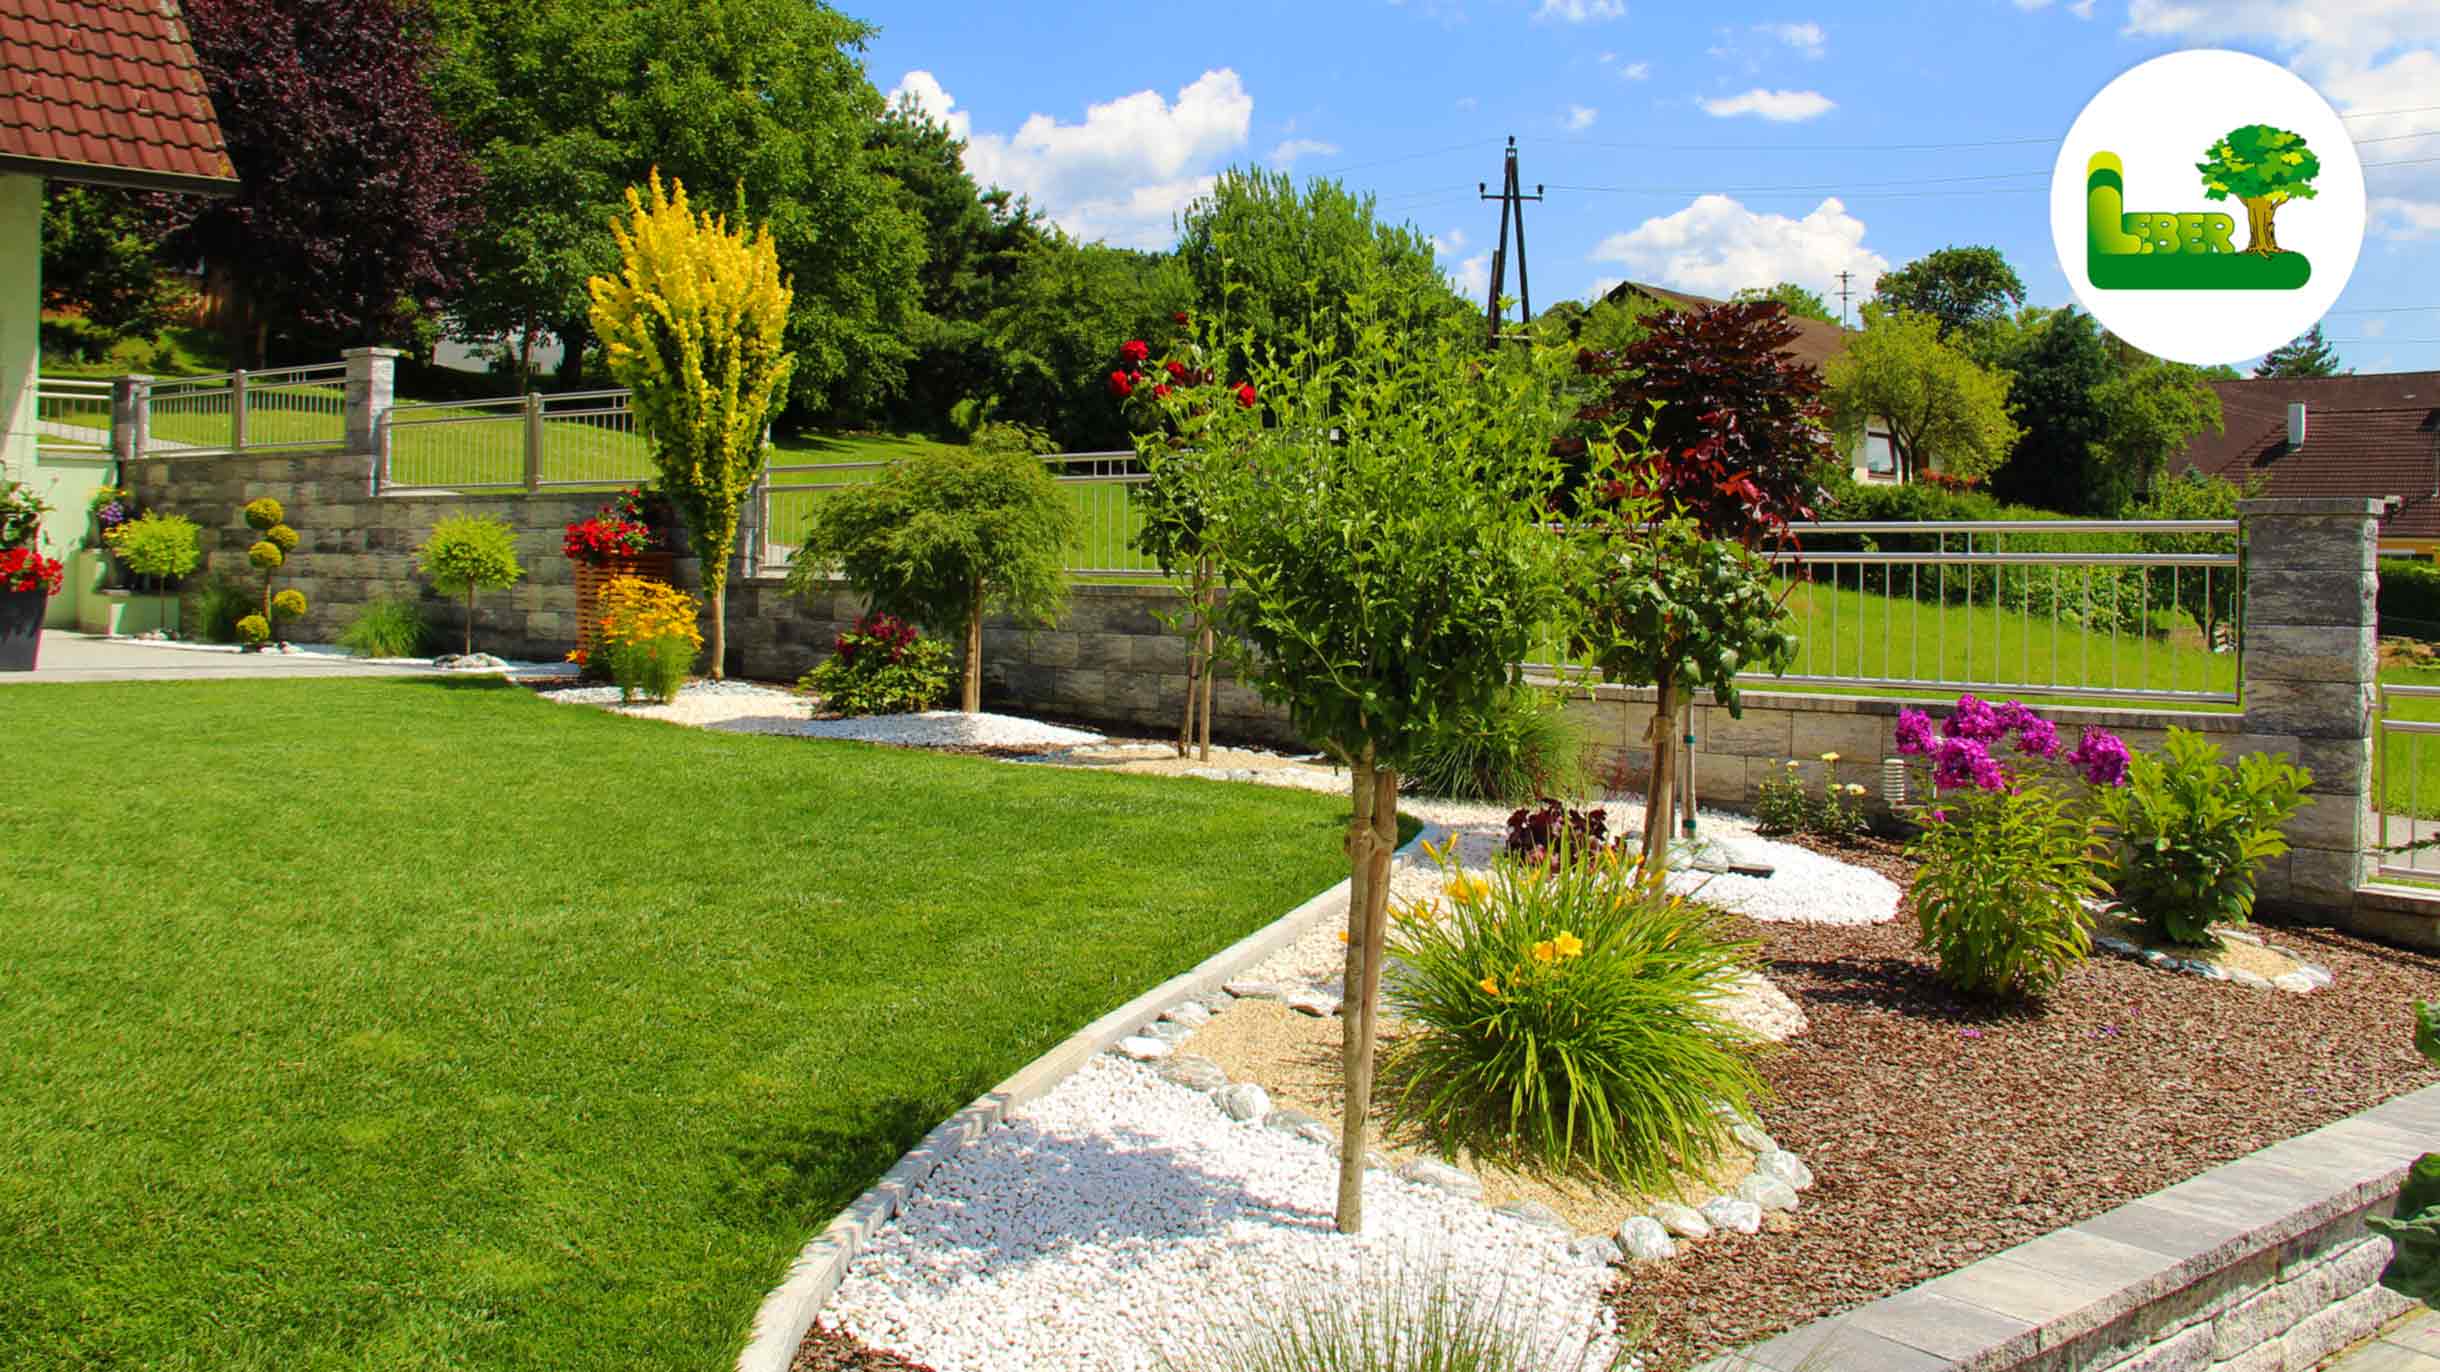 Gartenanlage im Landhausstil - Bepflanzung, Steingarten, Rindenmulch, Gartenmauer